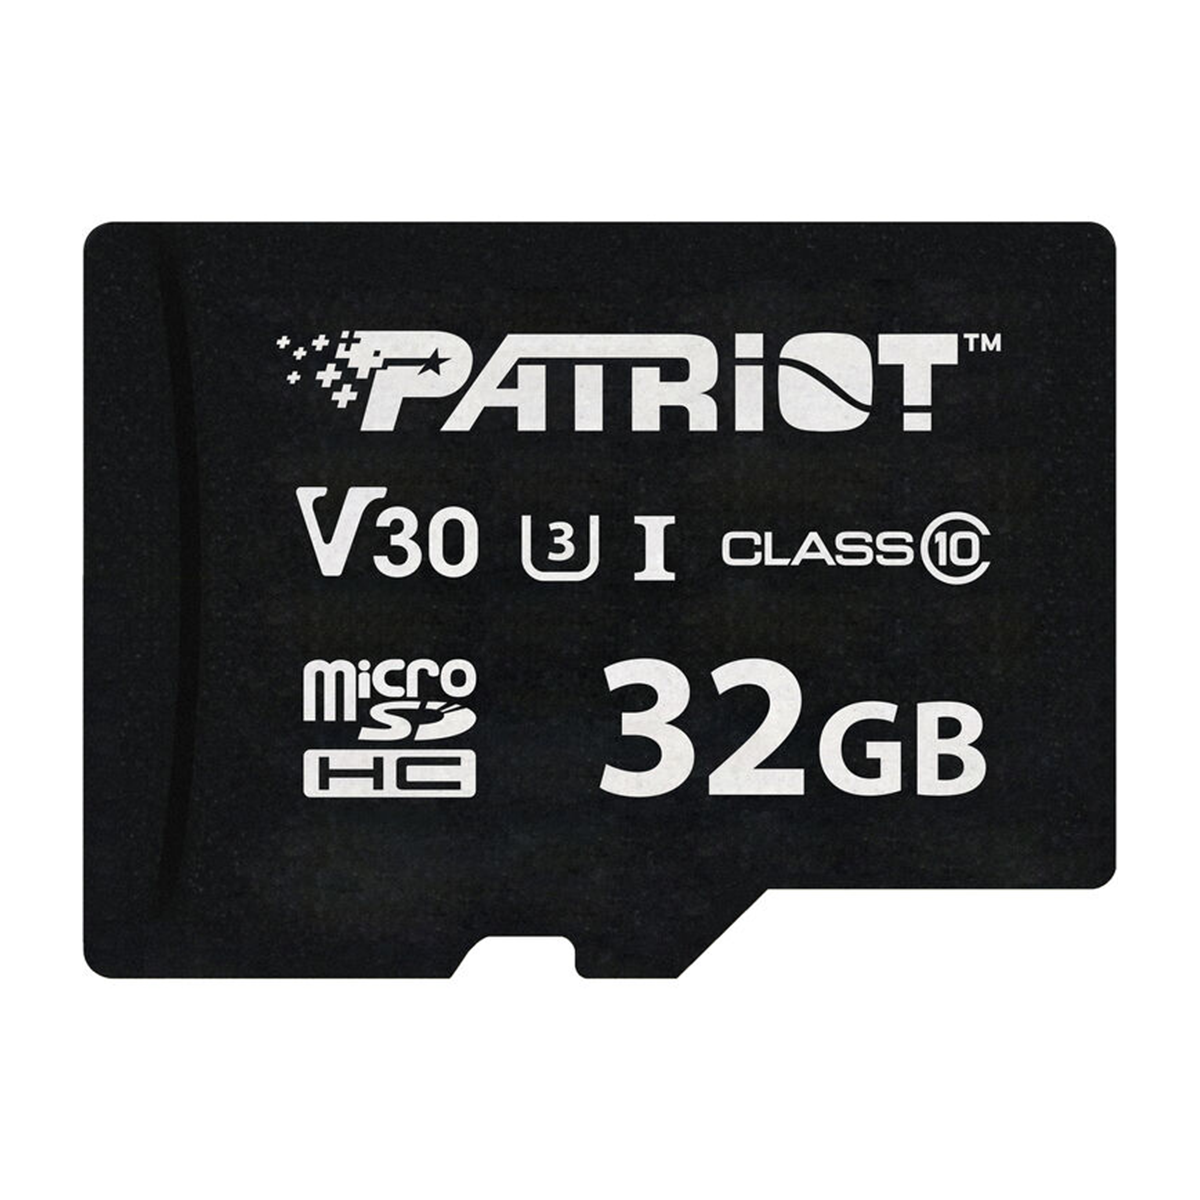 کارت حافظه microSDHC پاتریوت مدل VX Series کلاس 10 استاندارد UHS-I U3 V30 سرعت 90MBps ظرفیت 32 گیگابایت